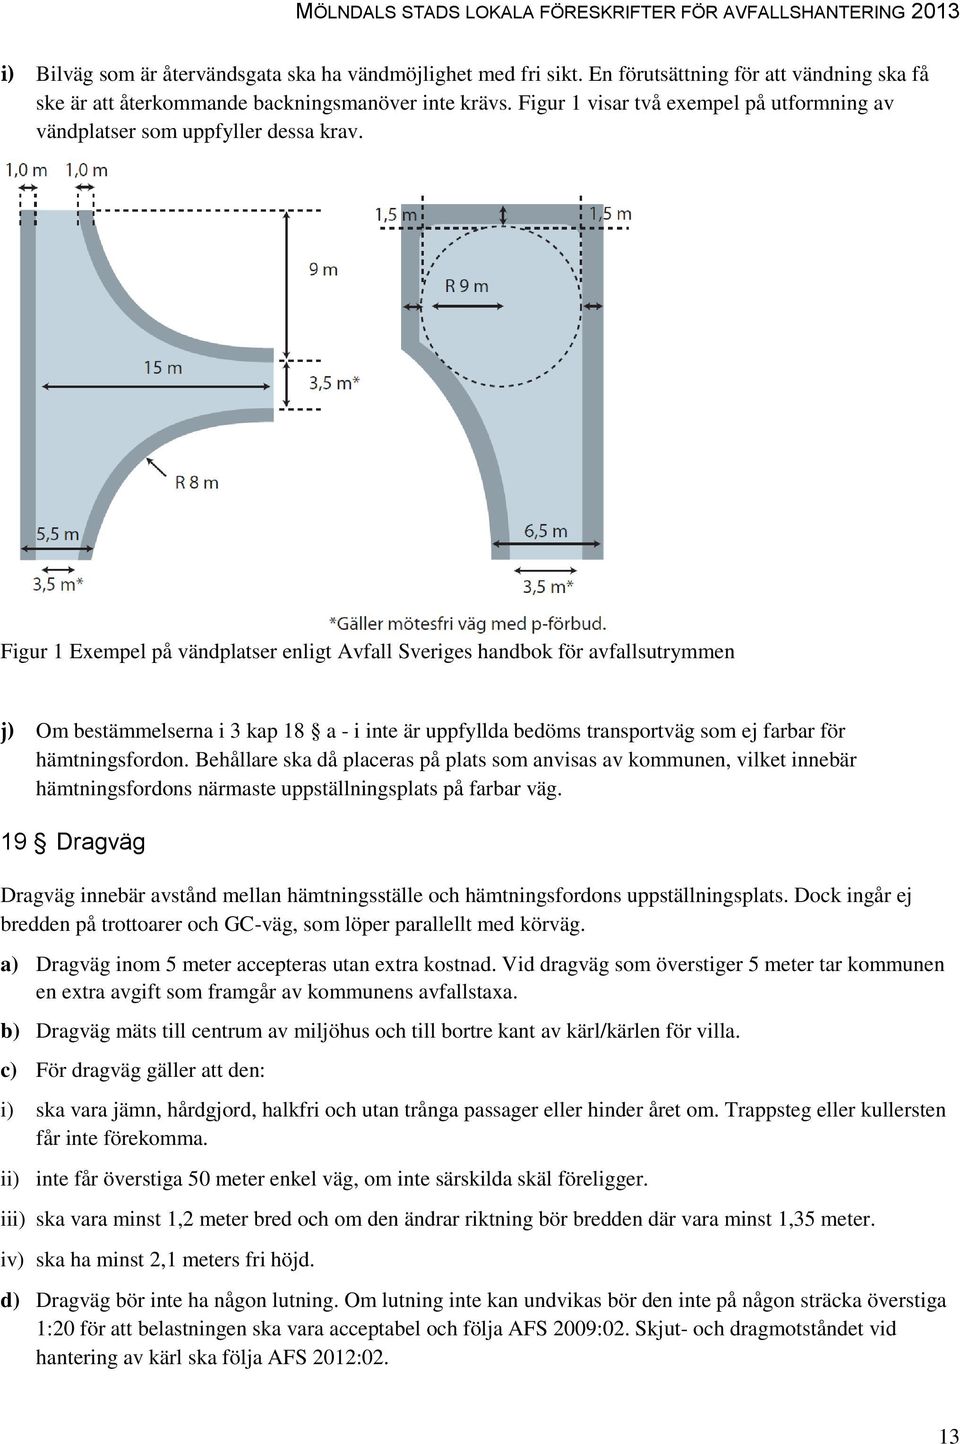 Figur 1 Exempel på vändplatser enligt Avfall Sveriges handbok för avfallsutrymmen j) Om bestämmelserna i 3 kap 18 a - i inte är uppfyllda bedöms transportväg som ej farbar för hämtningsfordon.